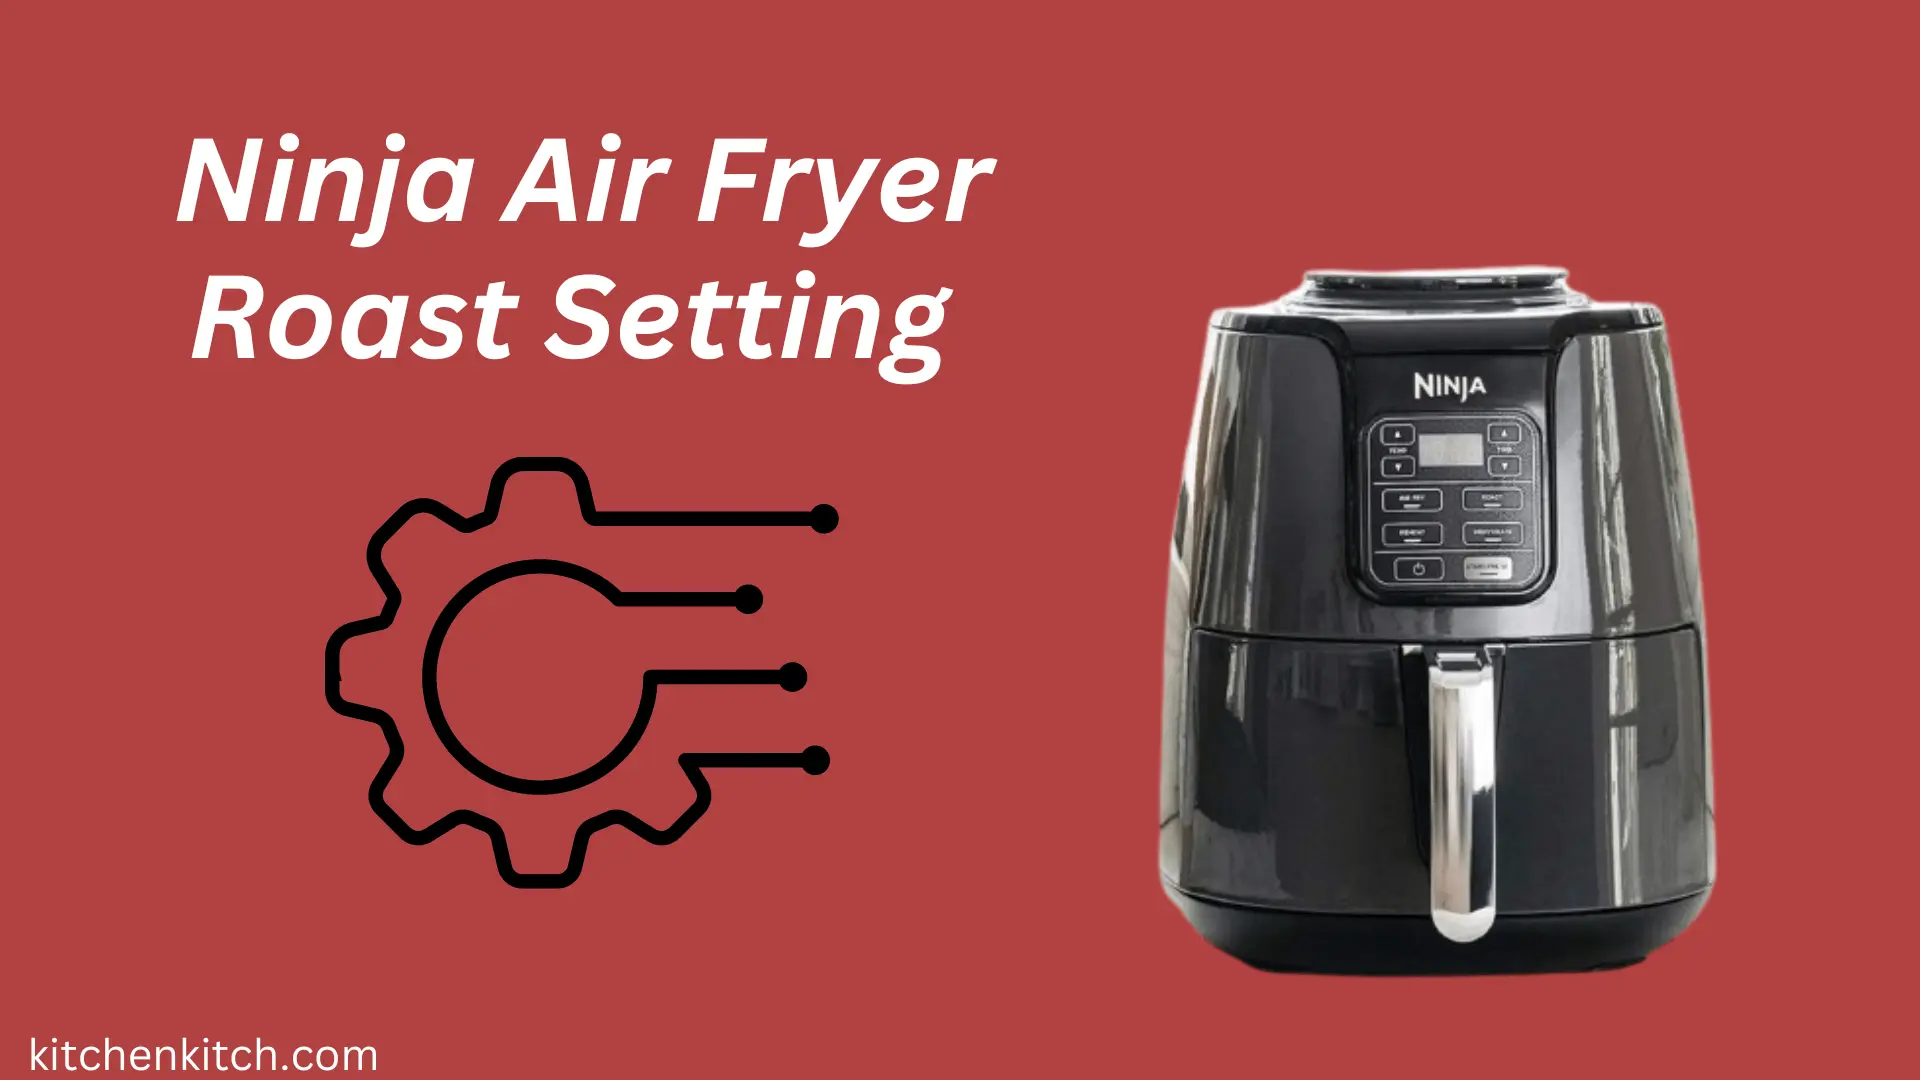 Ninja Air Fryer Roast Setting Step-By-Step Guide